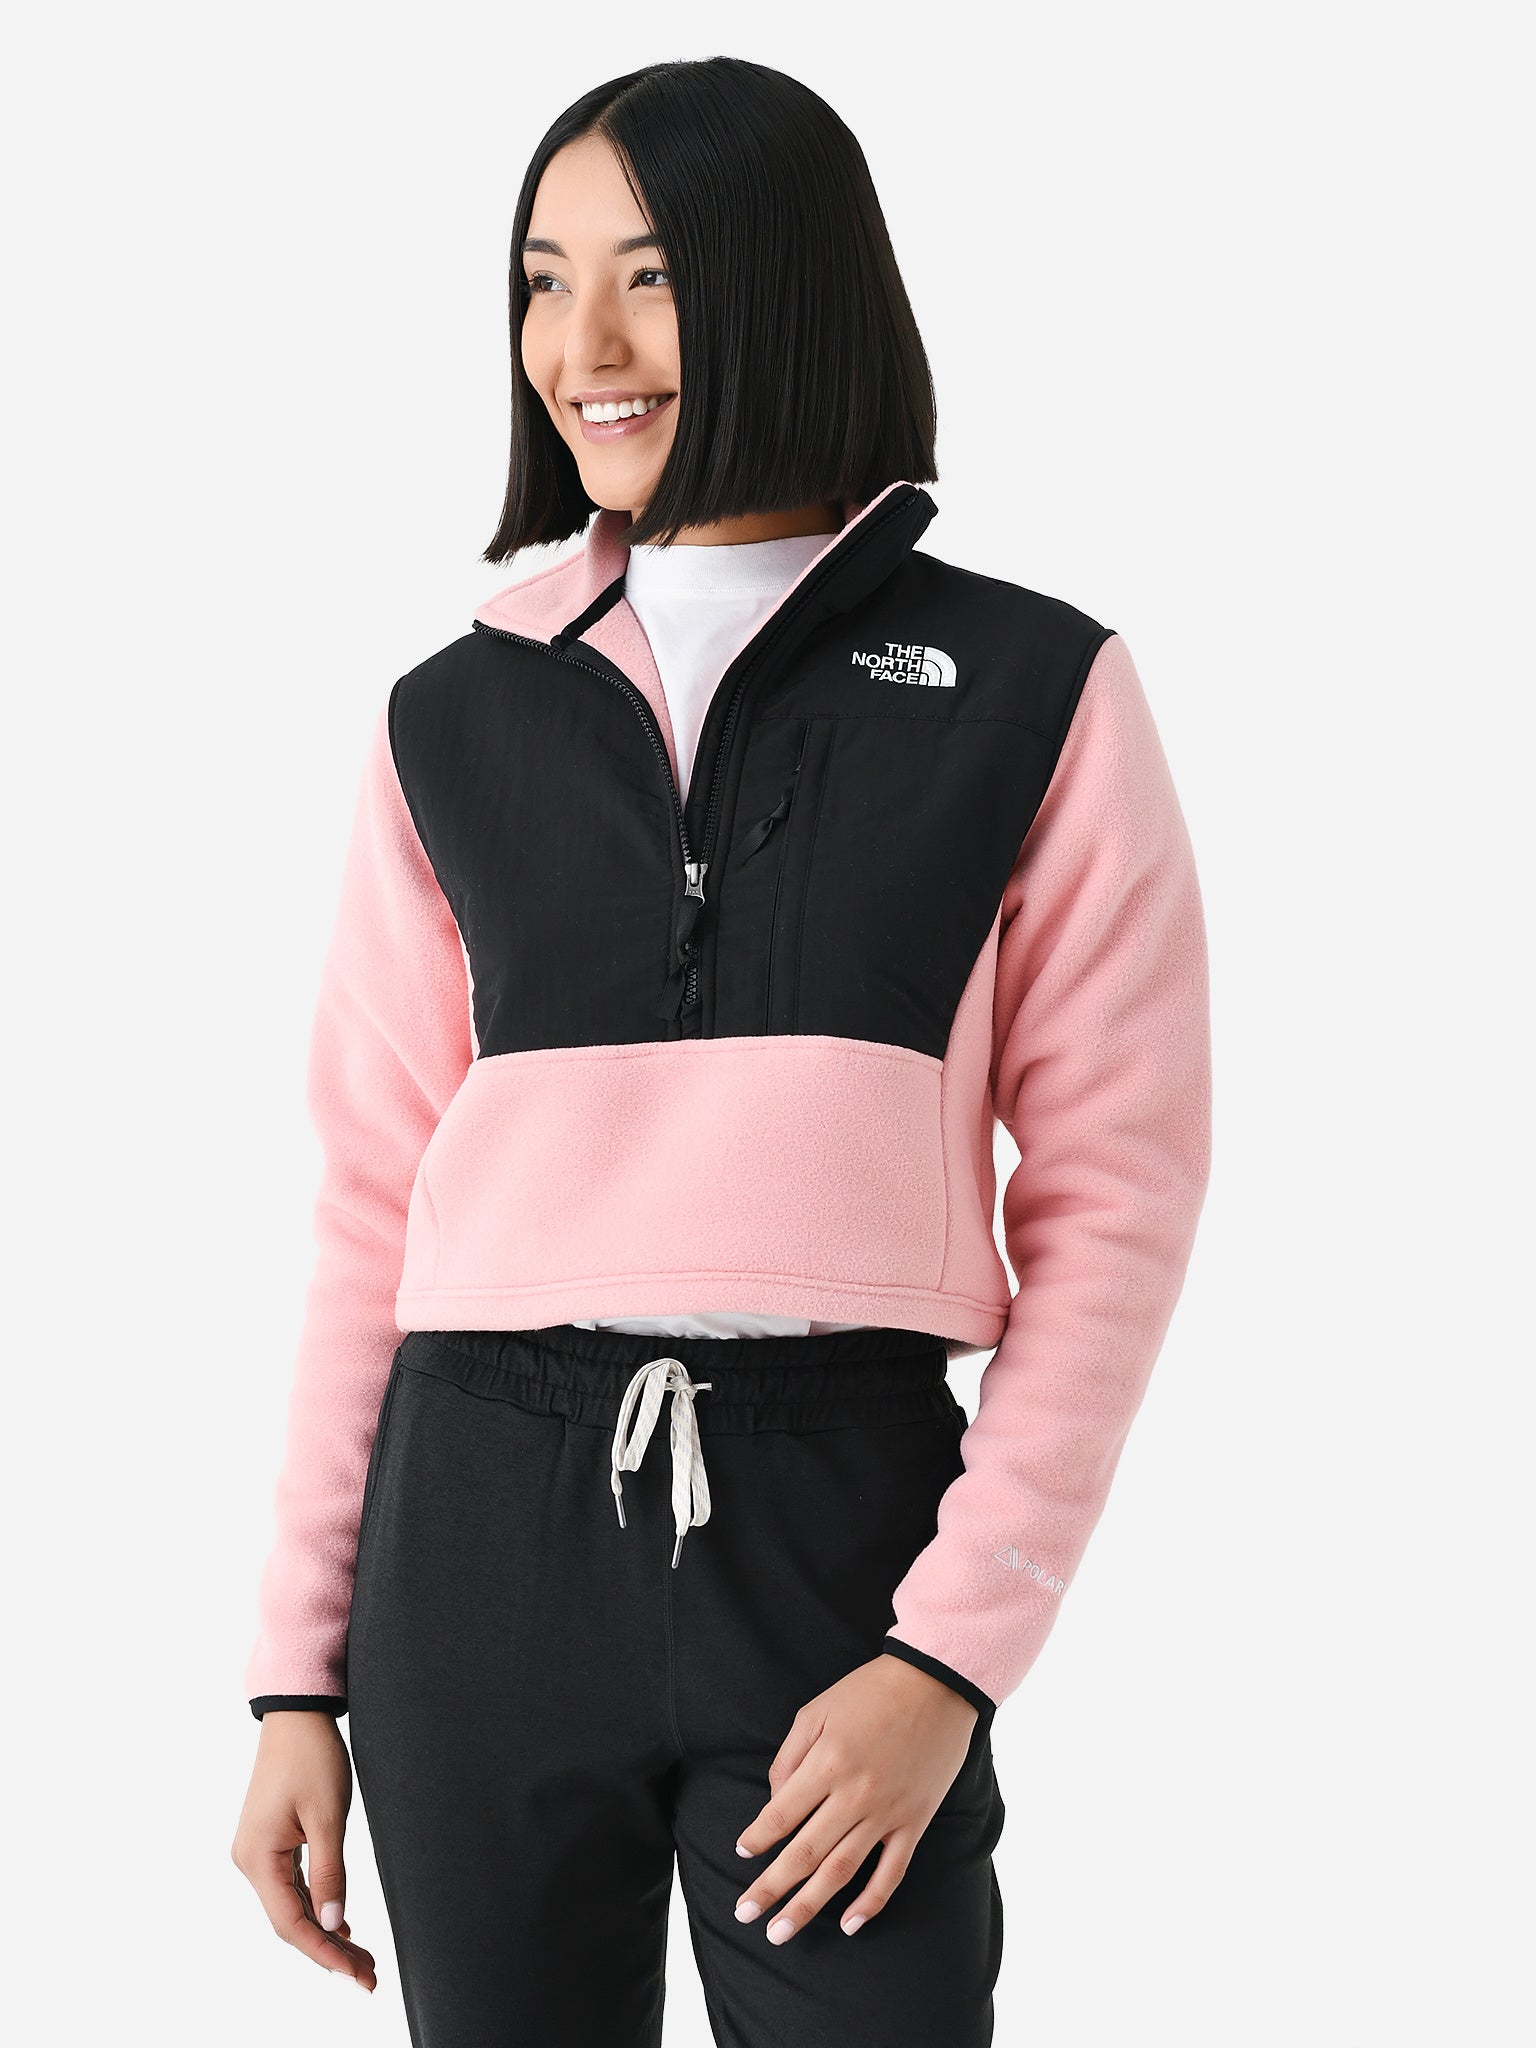 Denali Crop Fleece Jacket - Women's